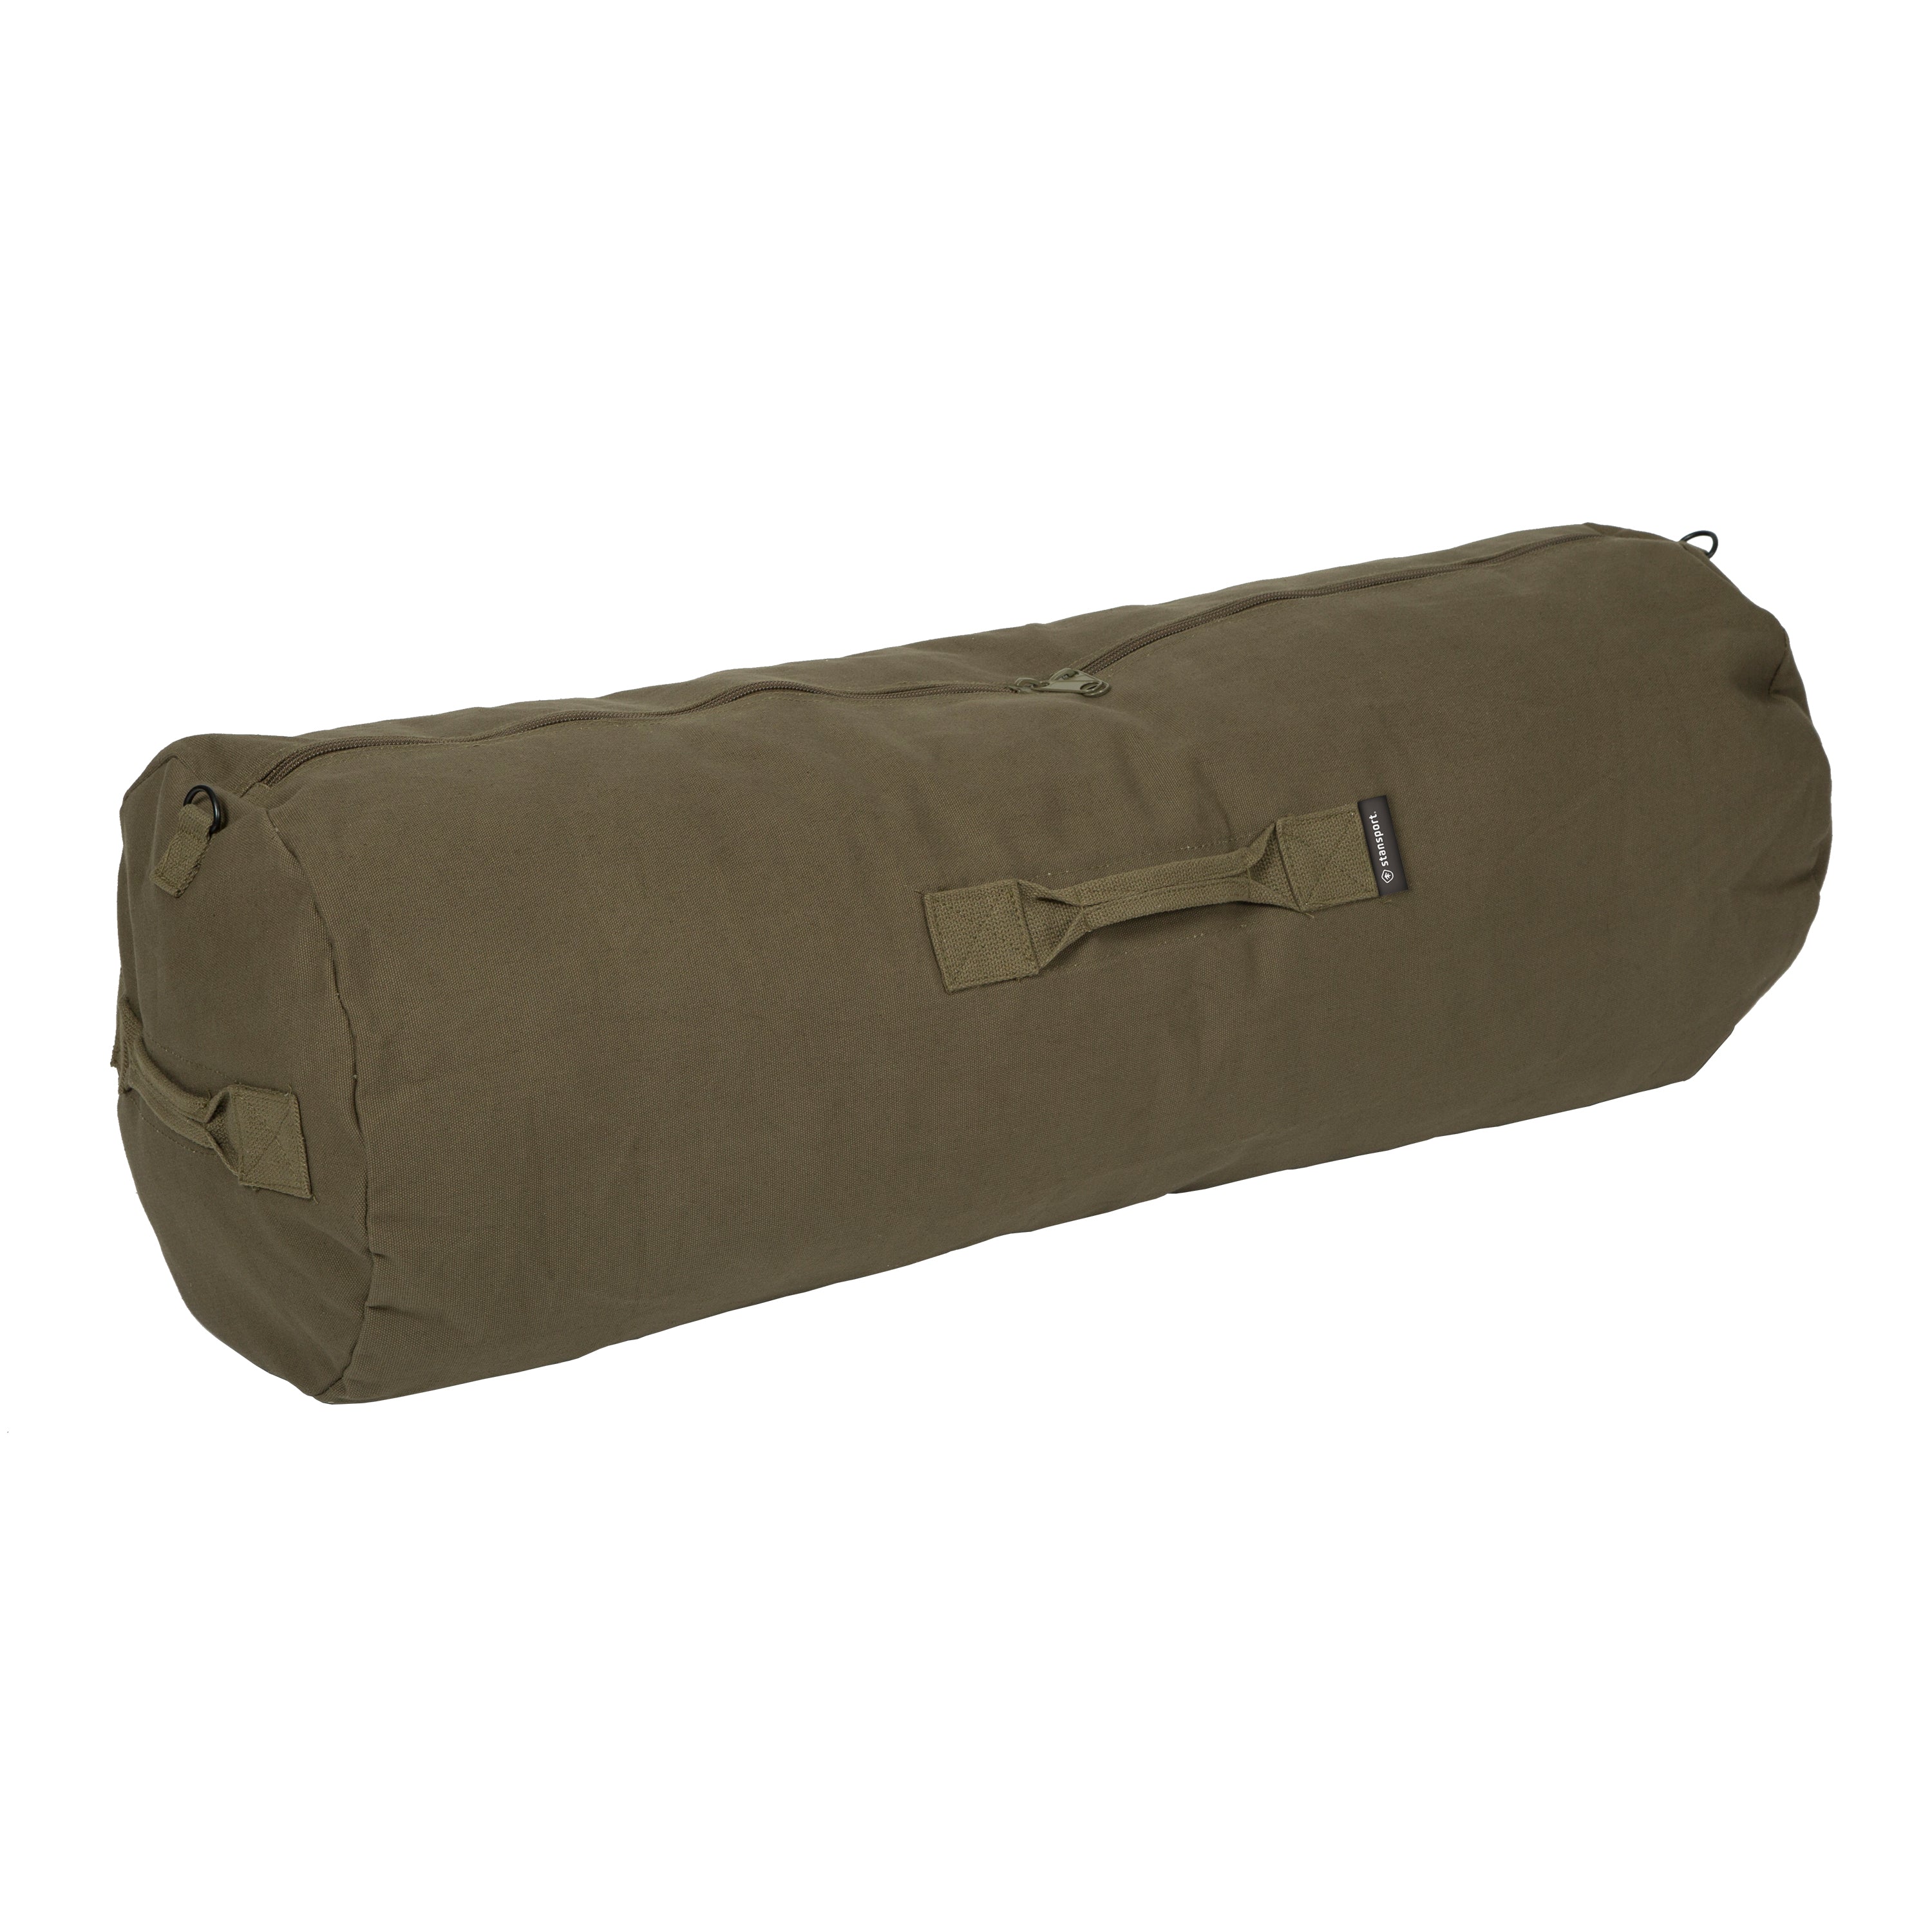 Duffel Bag With Zipper - O.D. - 50 In X 18 In X 18 In